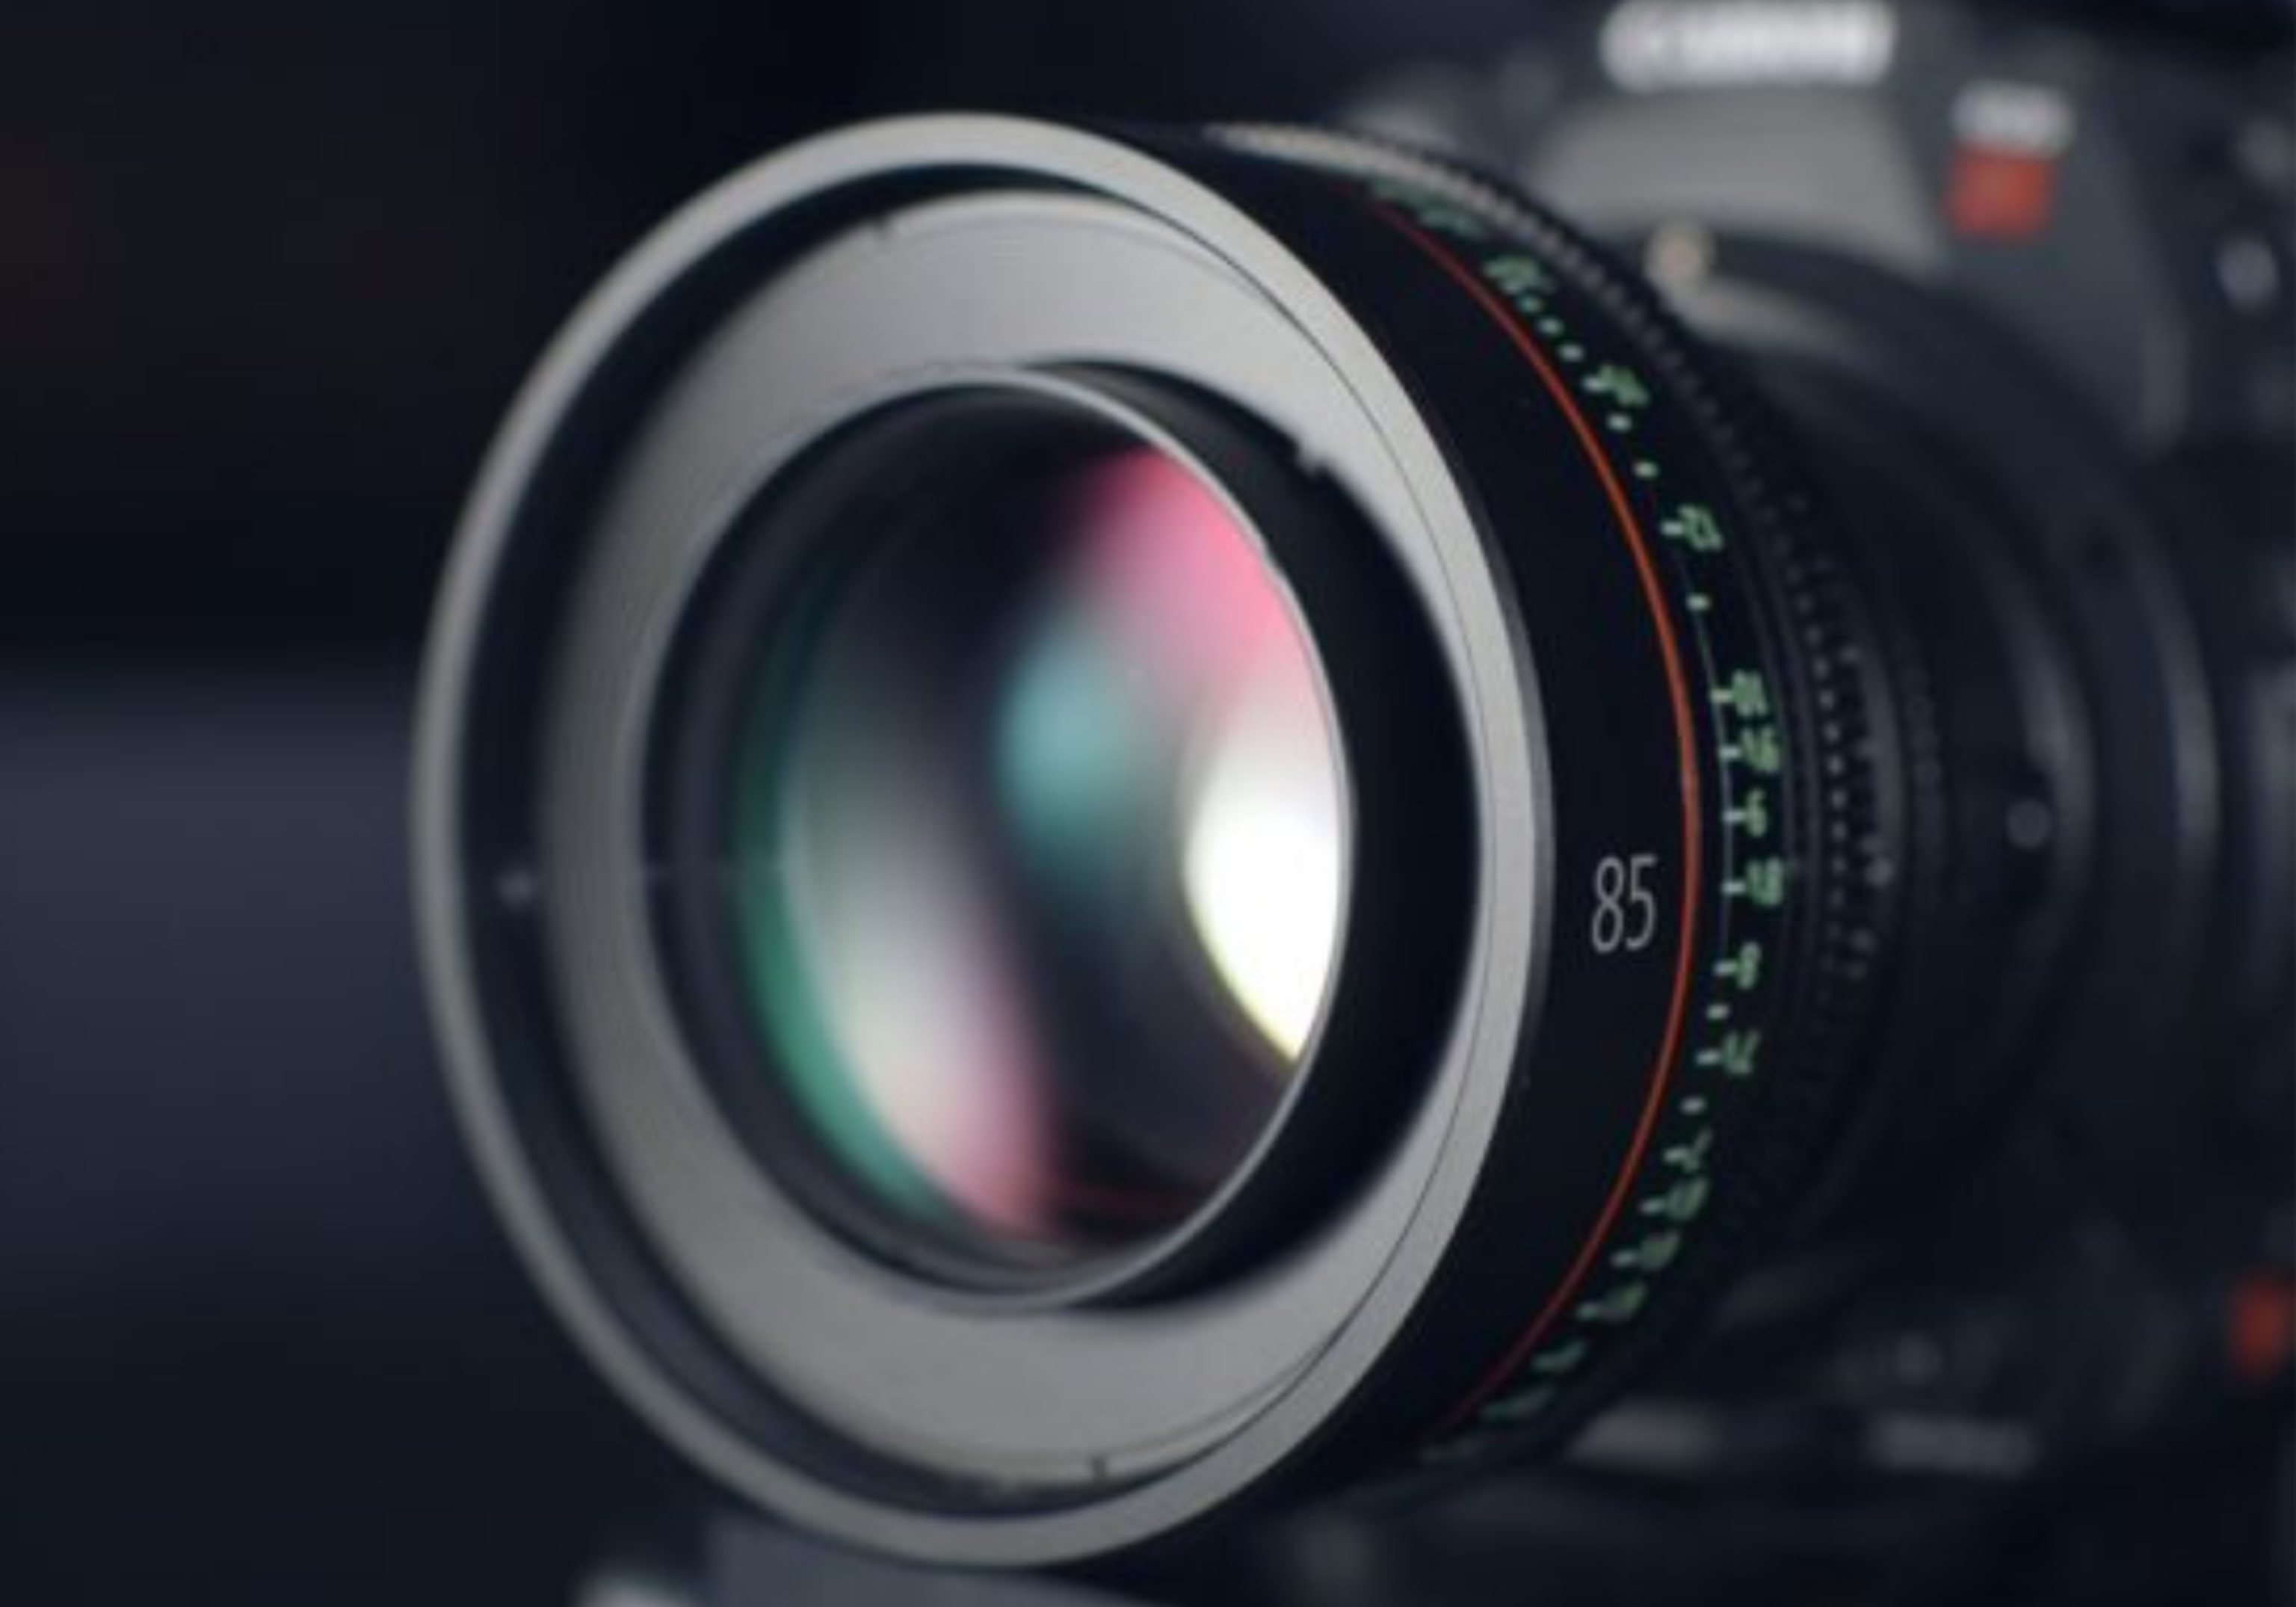 Close up image of a camera lens